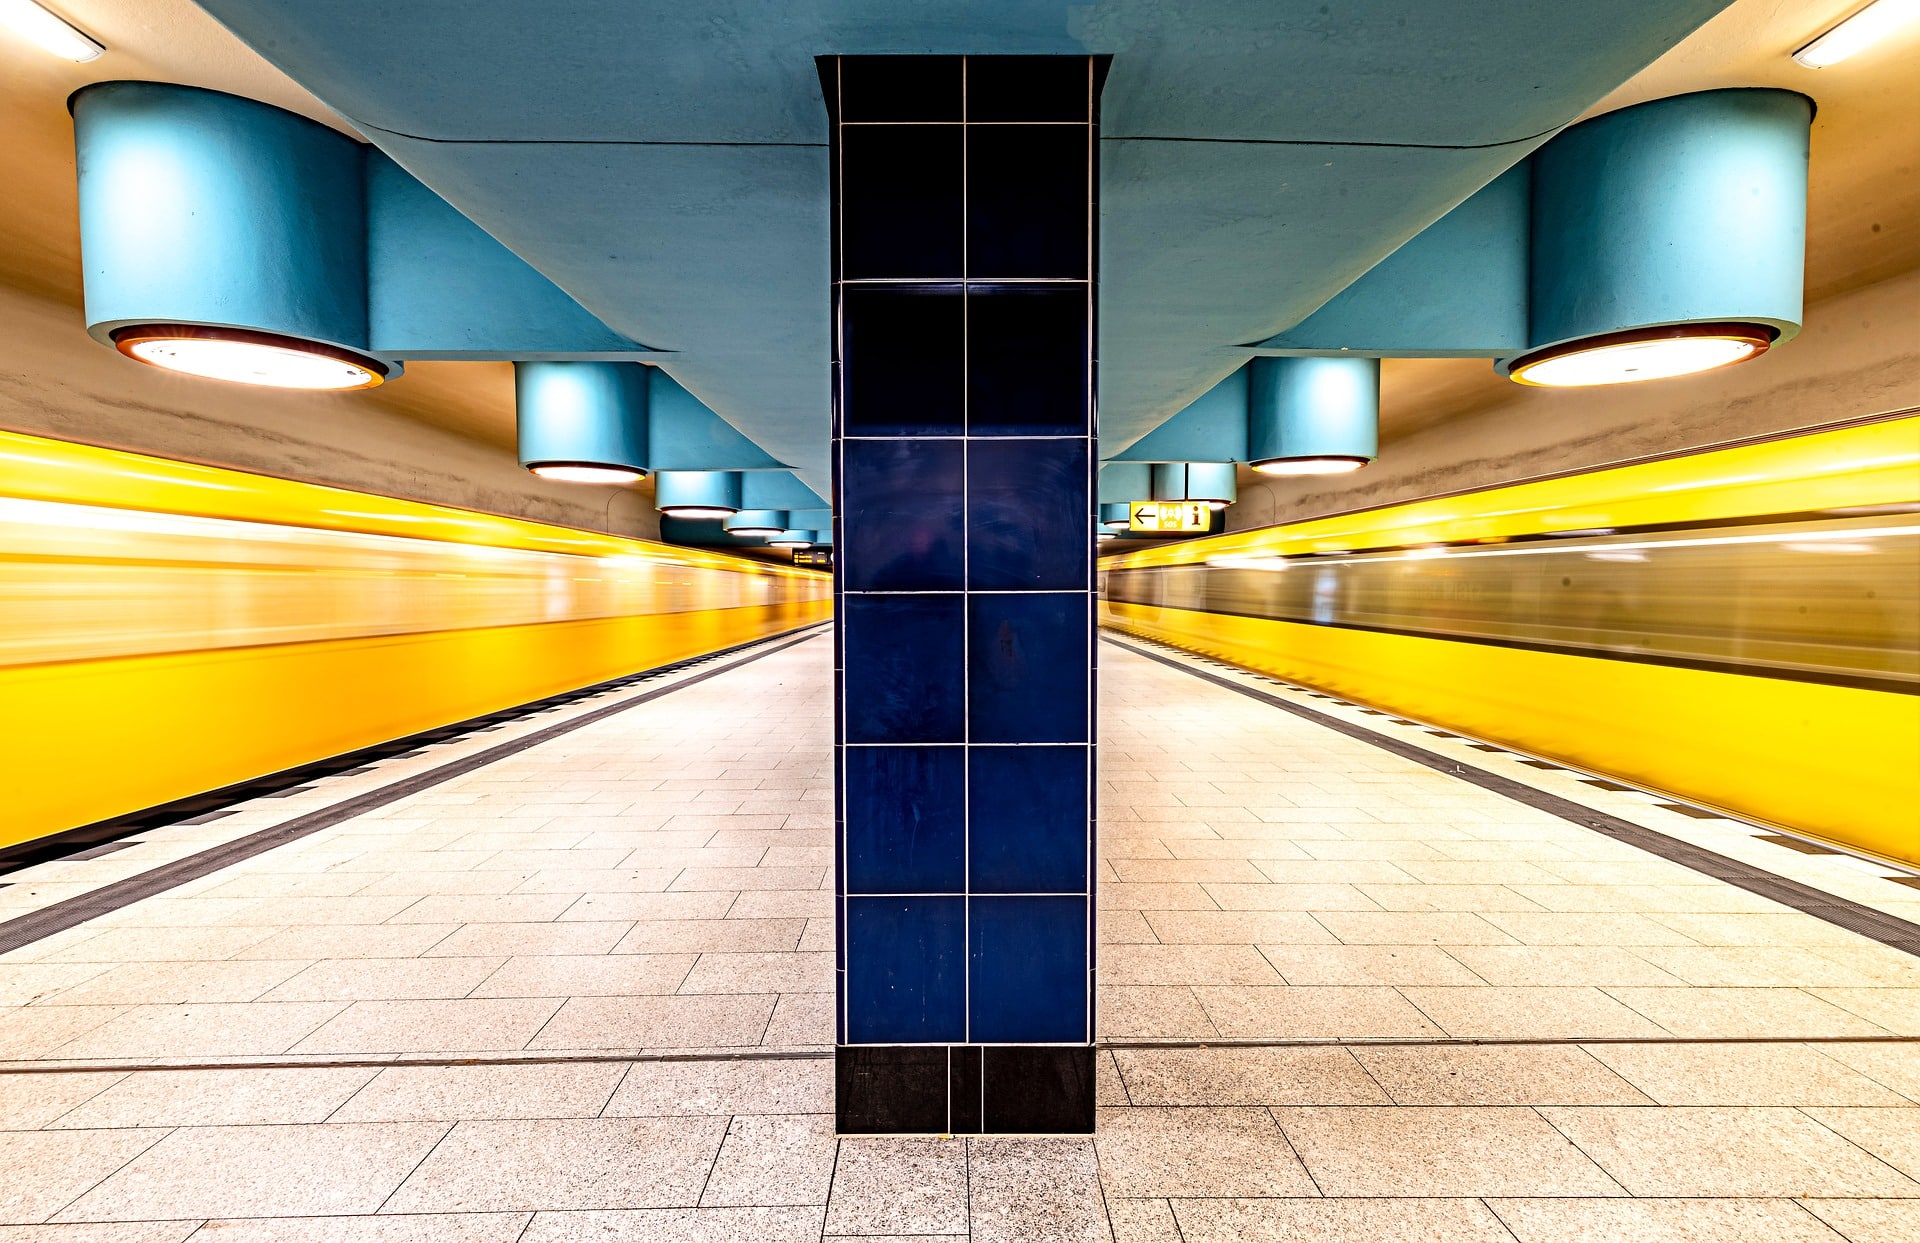 Berlin Underground Subway System